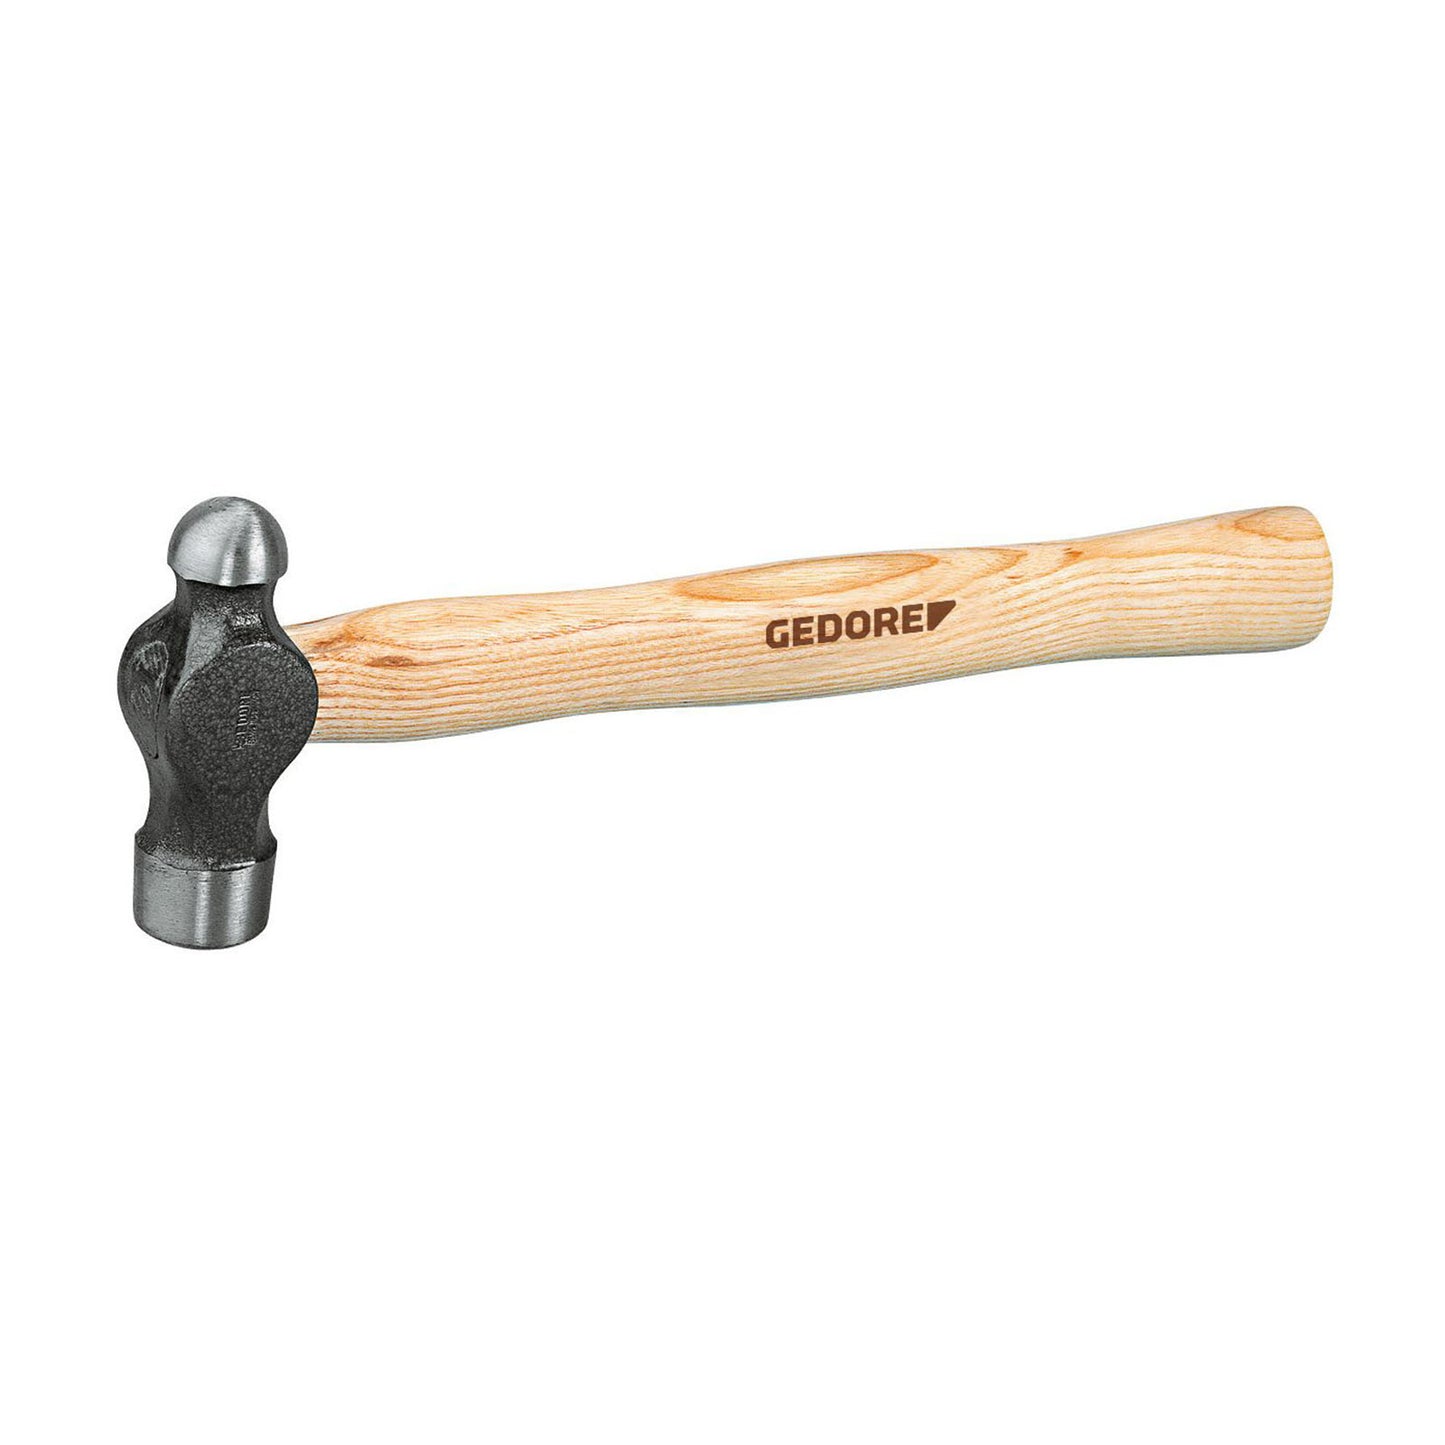 GEDORE 8601 1/4 - Mechanical hammer 1/4LBS (6764030)